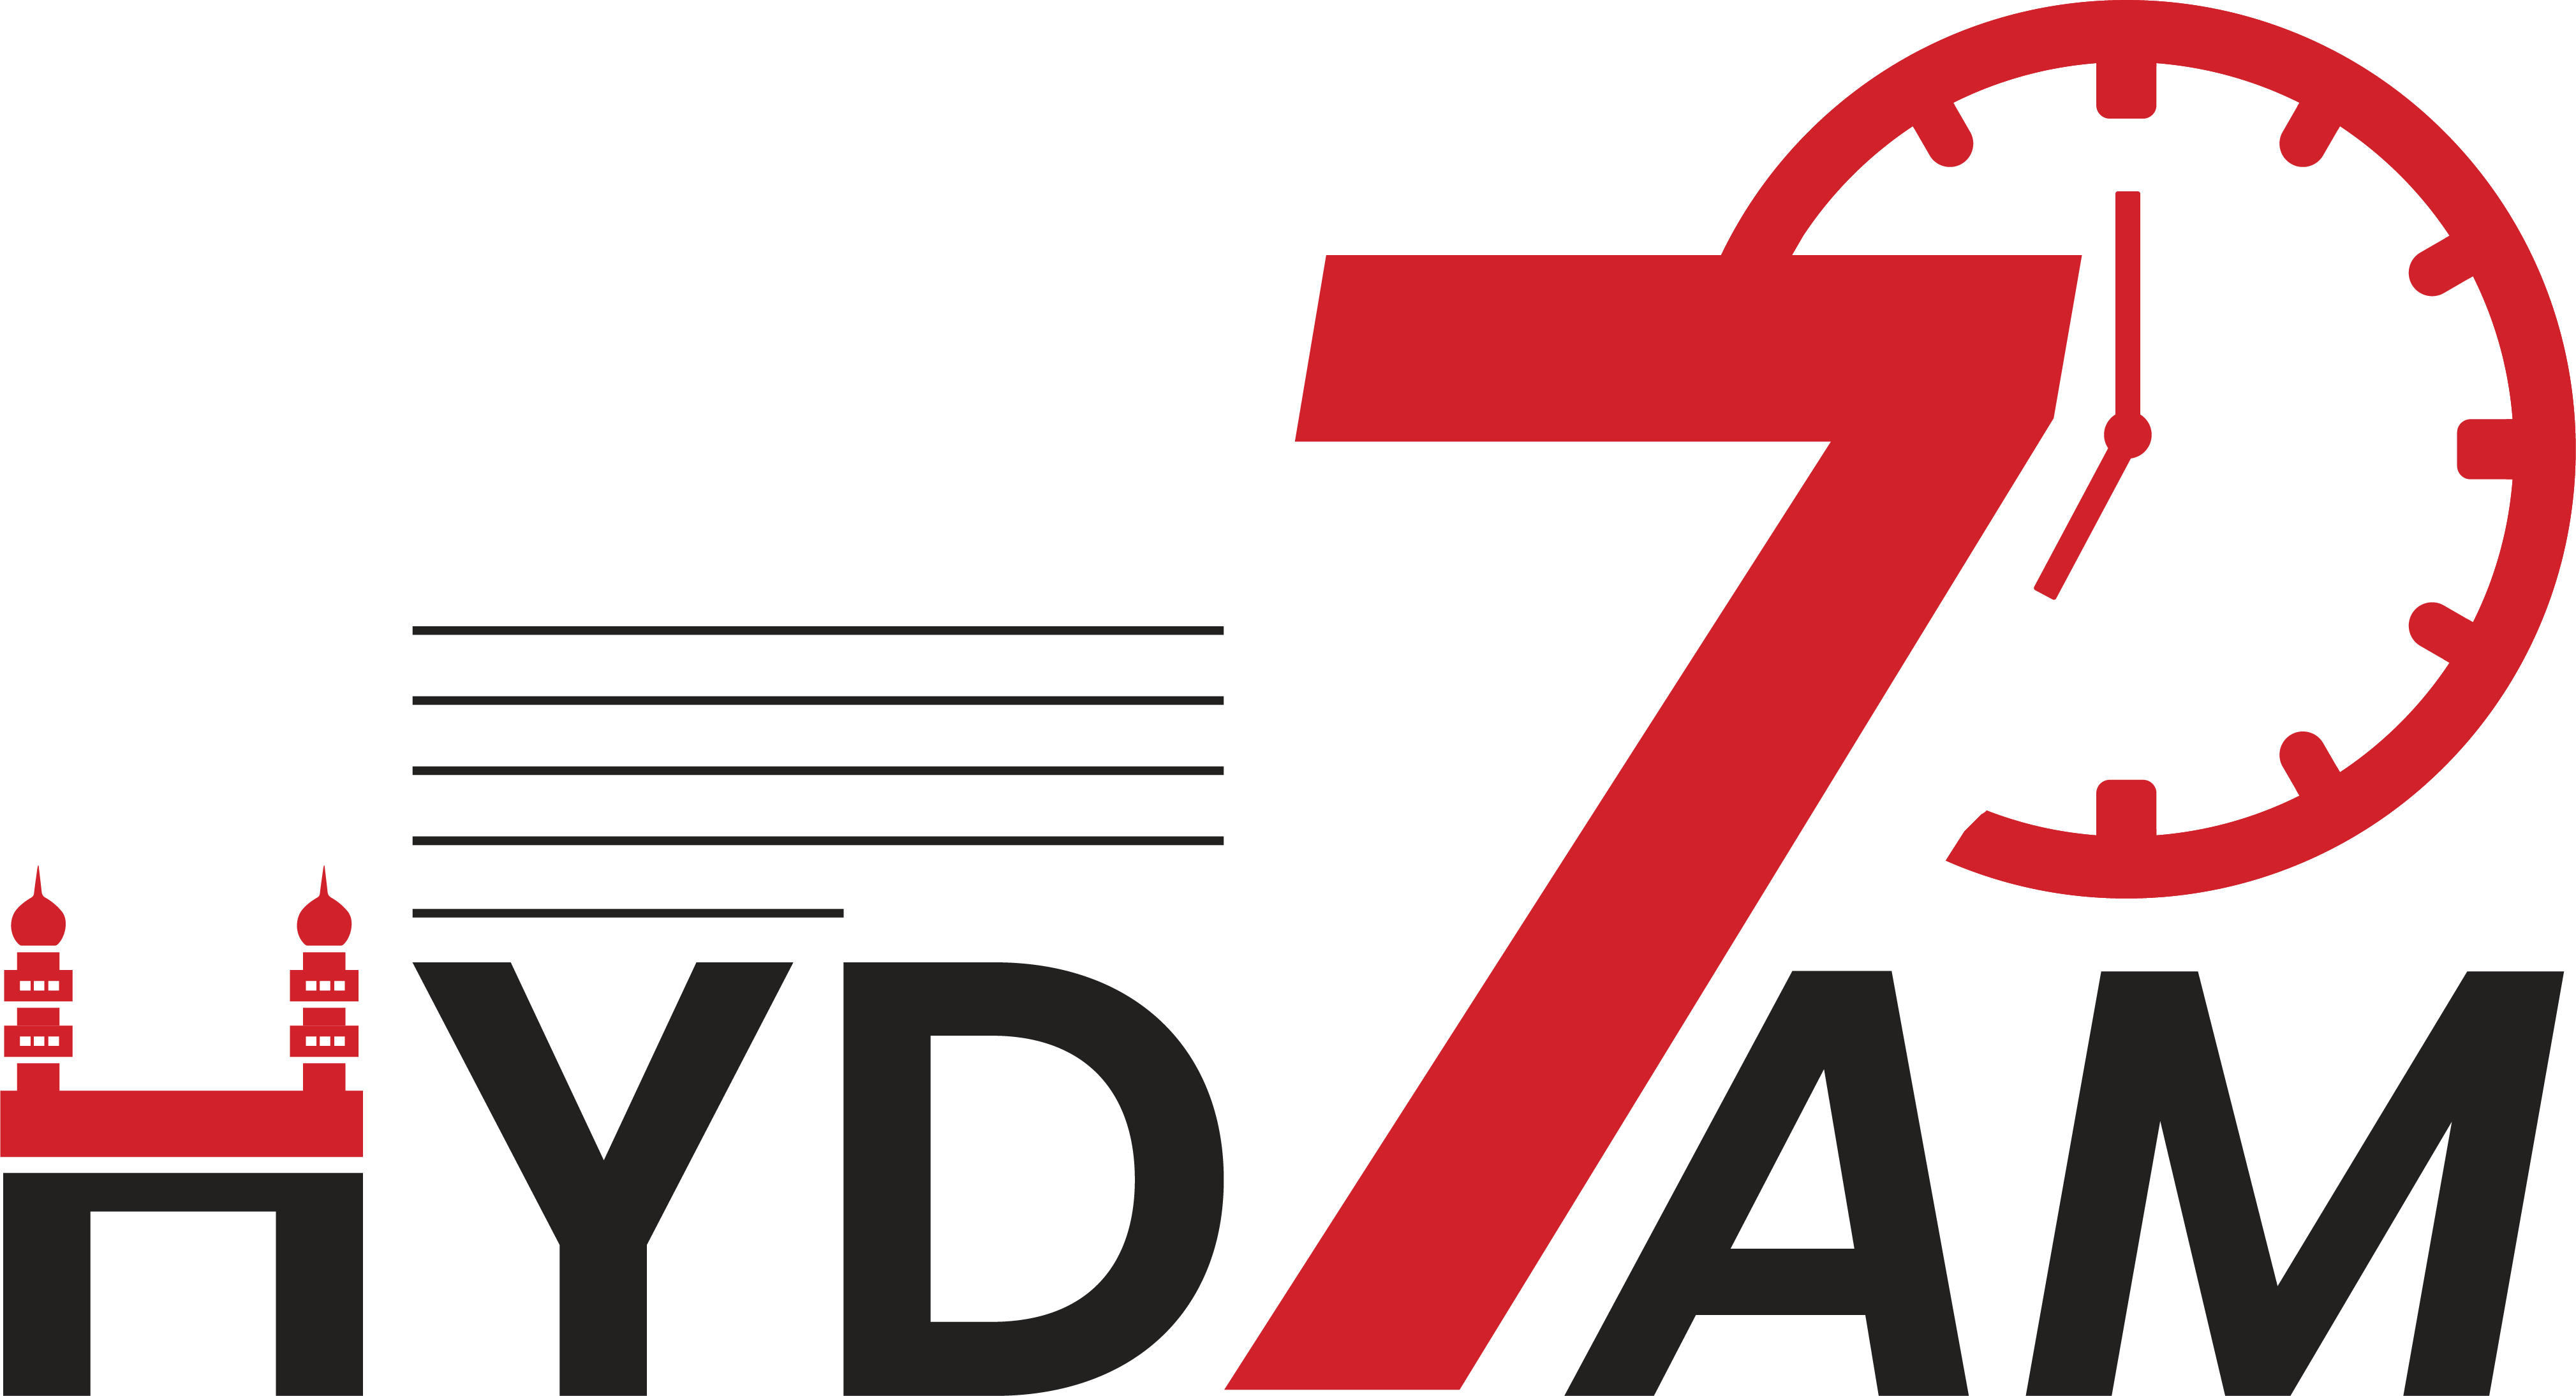 Hyd7am-Logo-red-1-e4e75006